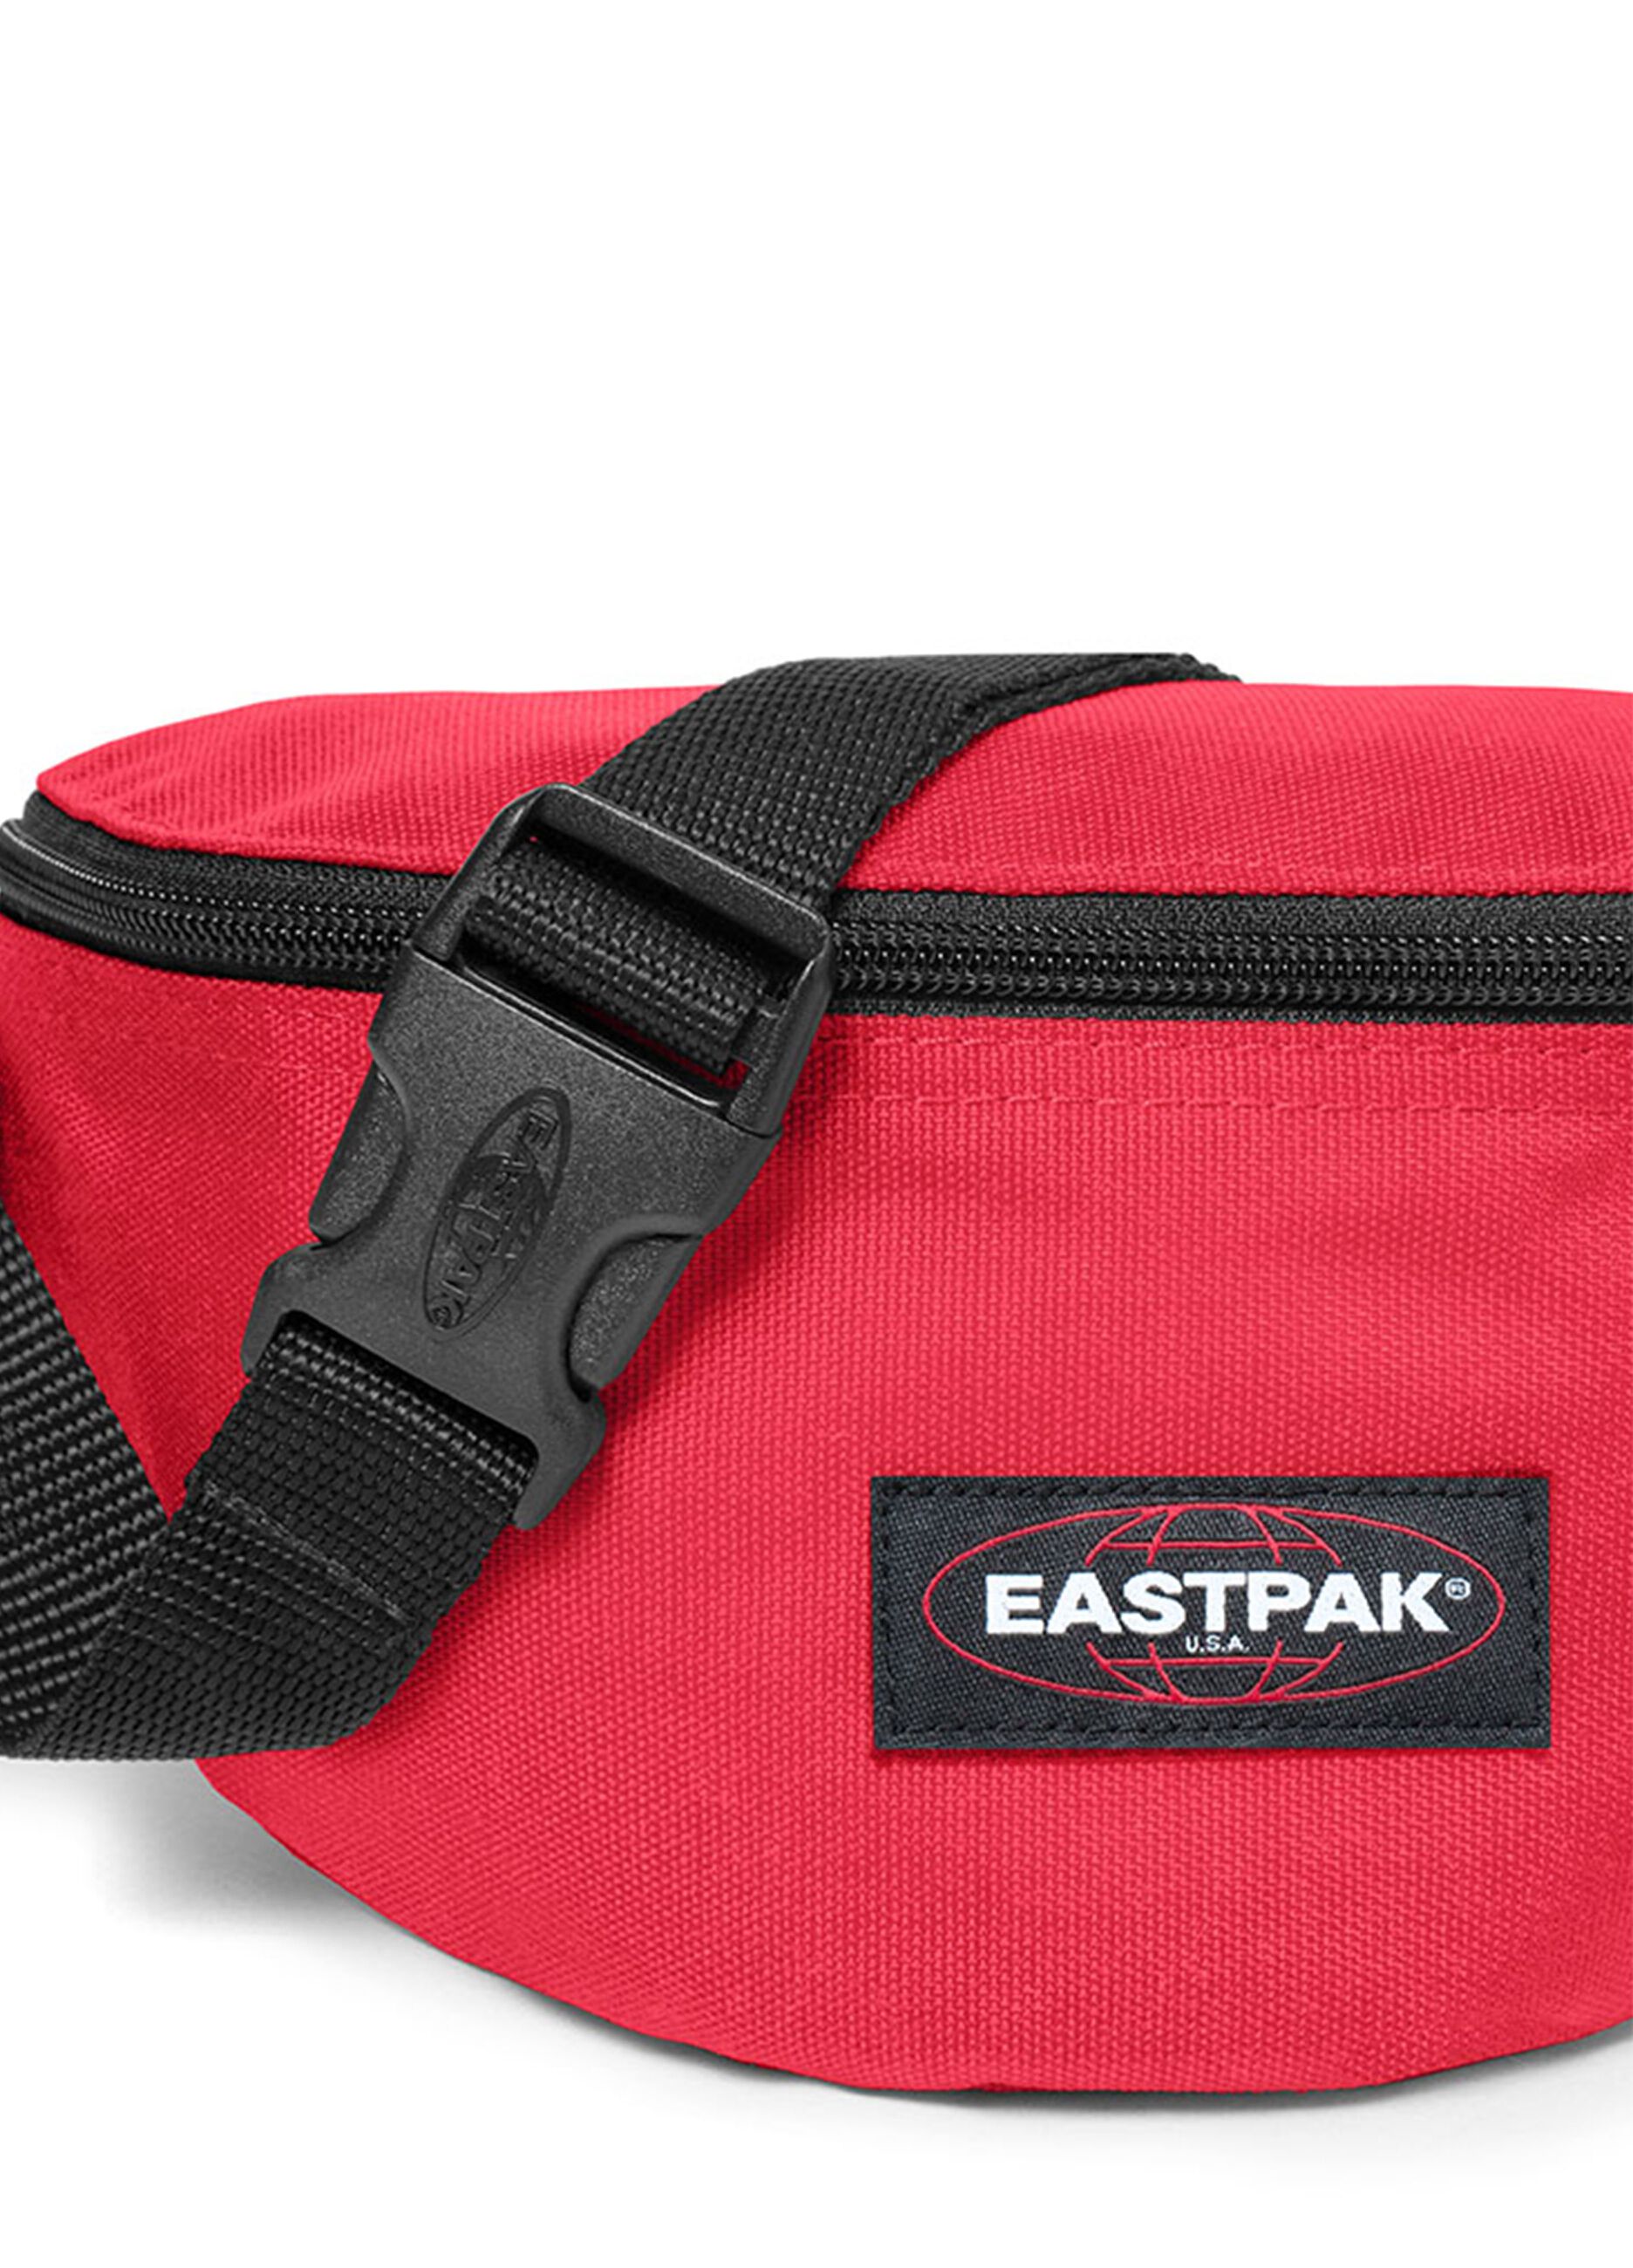 Eastpak Springer bum bag